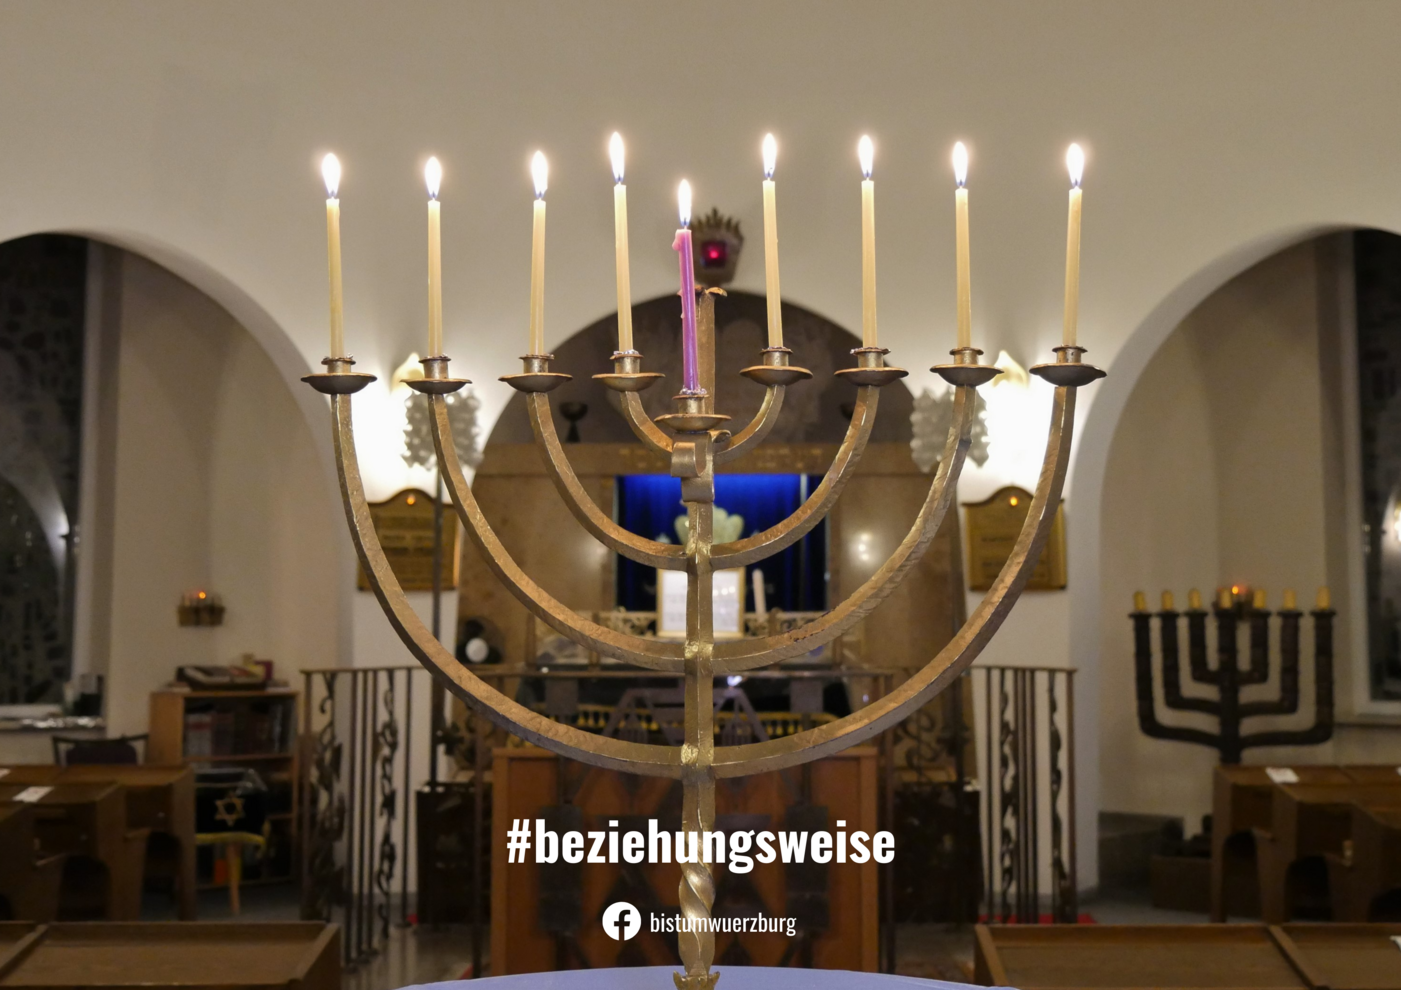 Chanukkiah-Leuchter in der Würzburger Synagoge